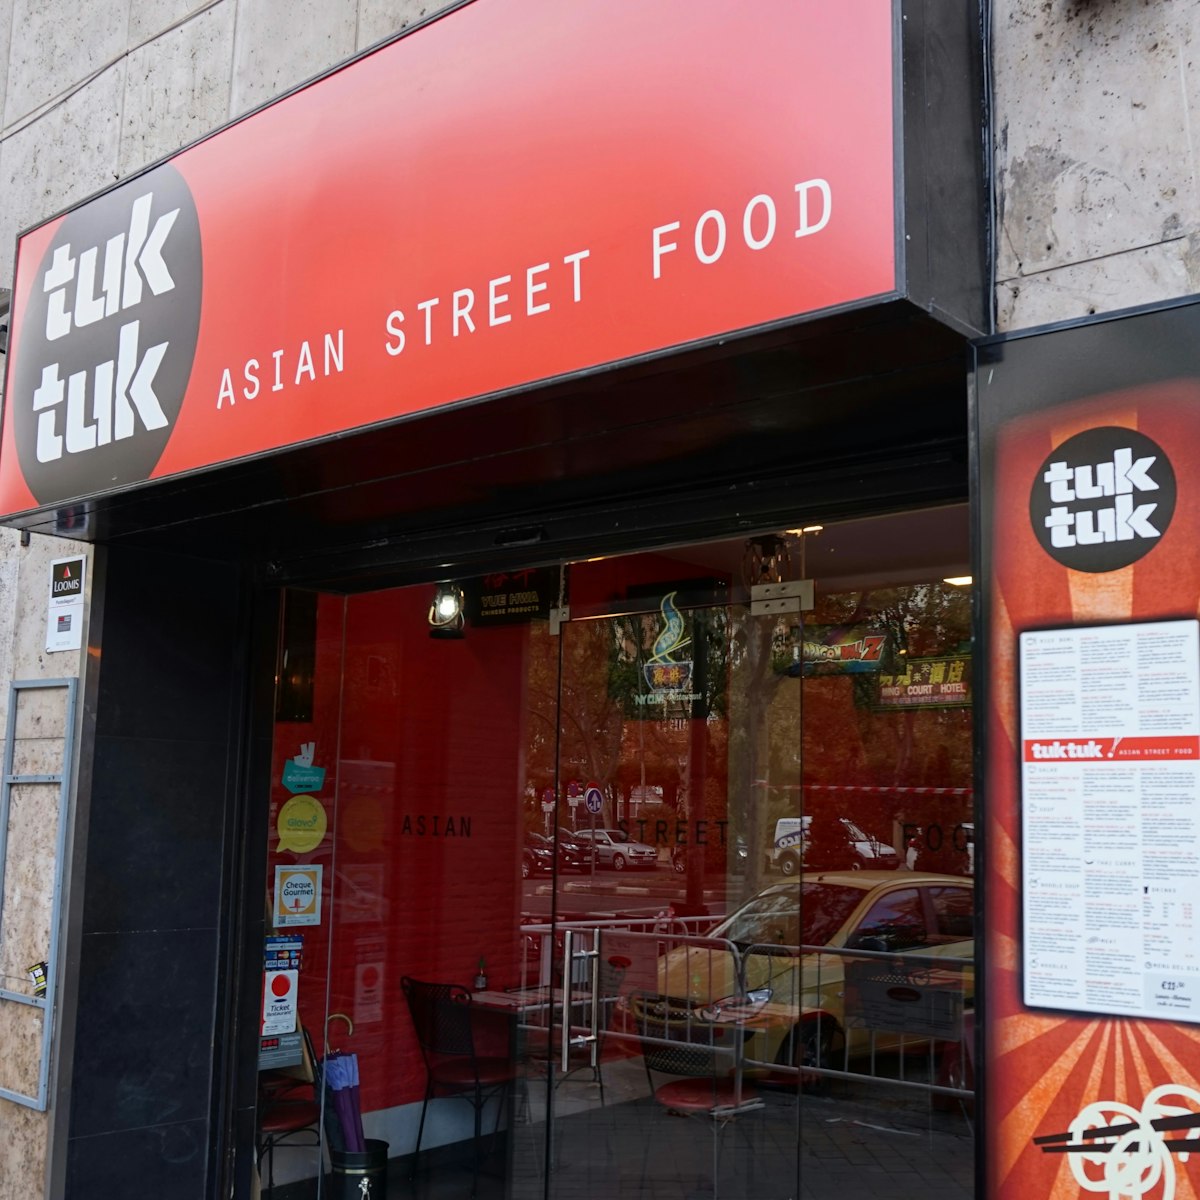 Tuk Tuk Asian Street Food's facade